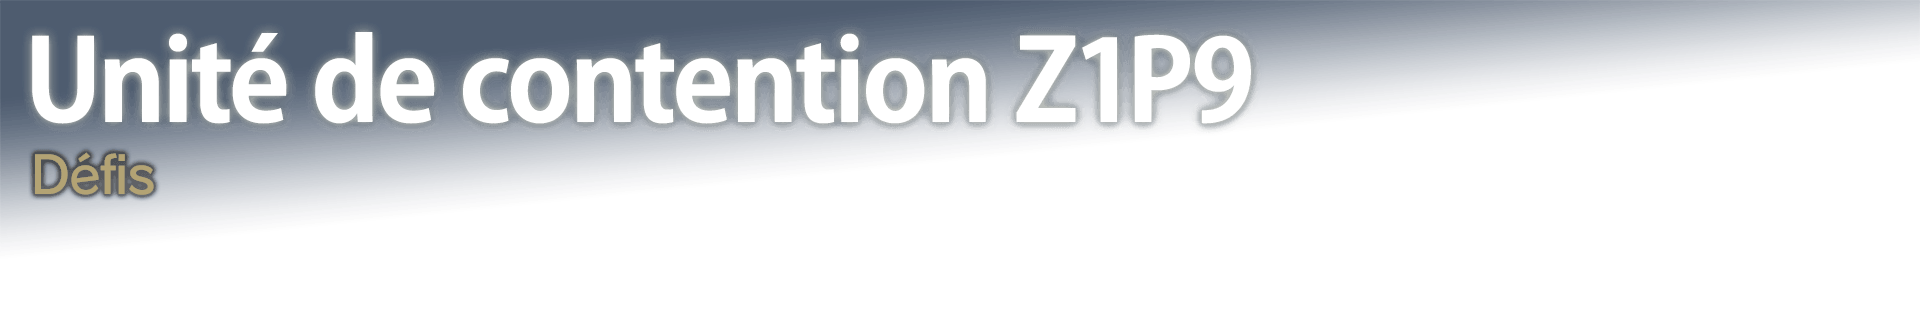 Unité de contention Z1P9